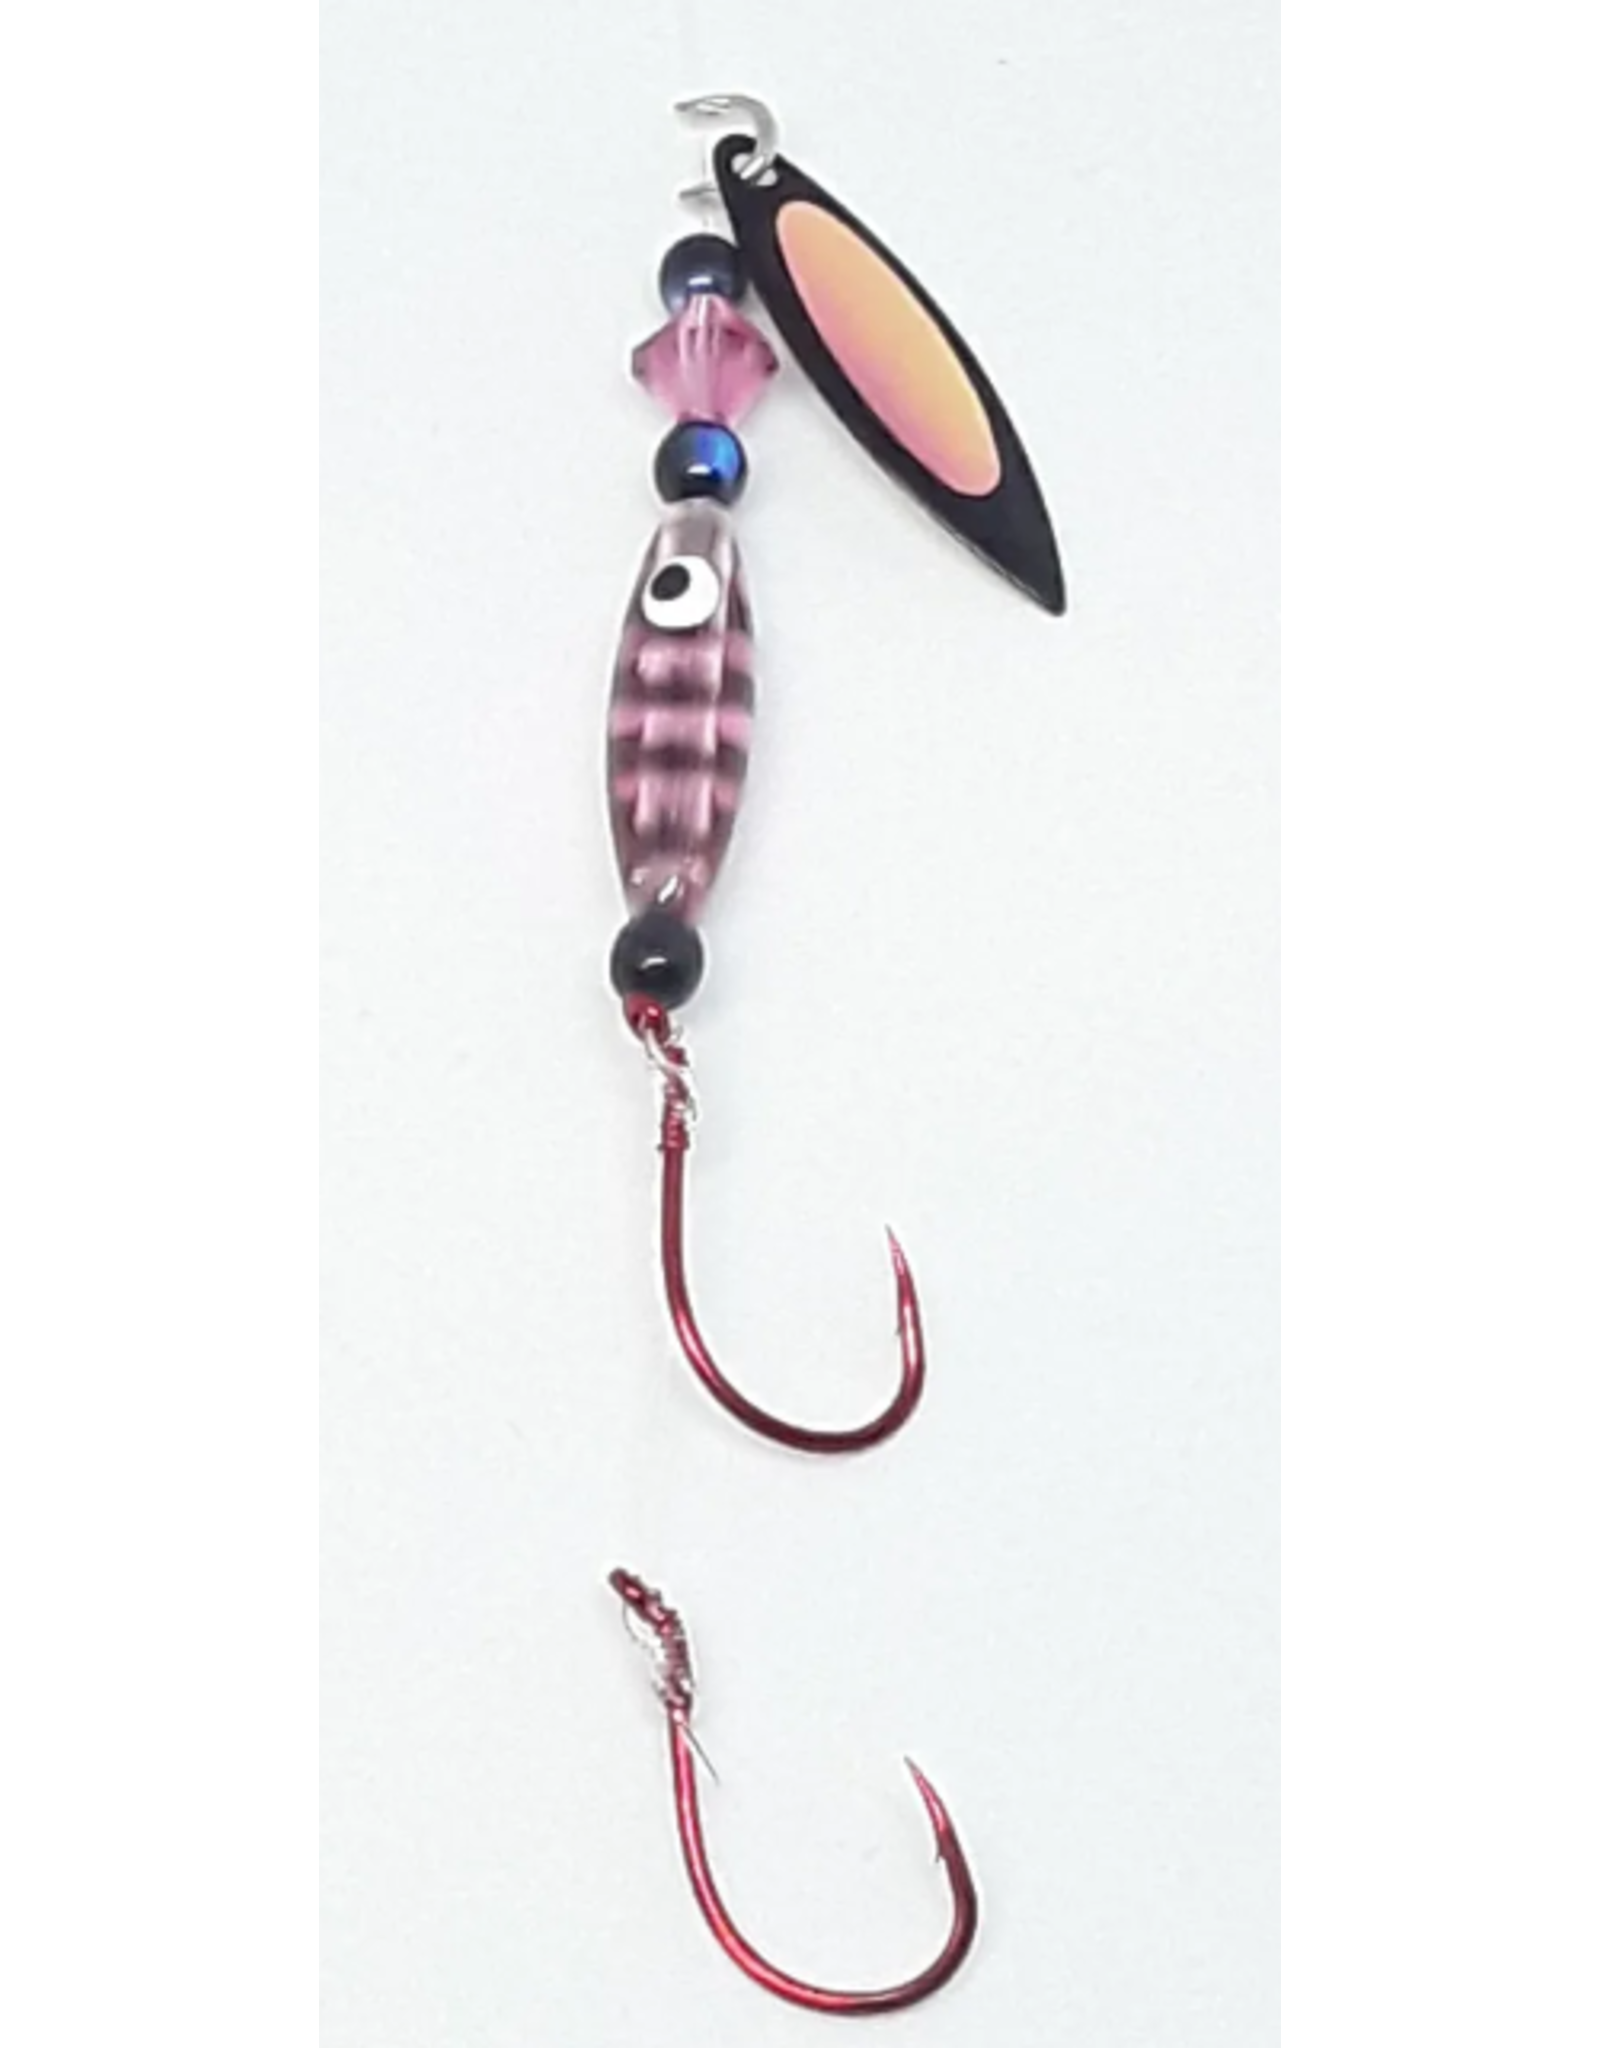 Kokabow Fishing Tackle - KokaBug - Pink Panther